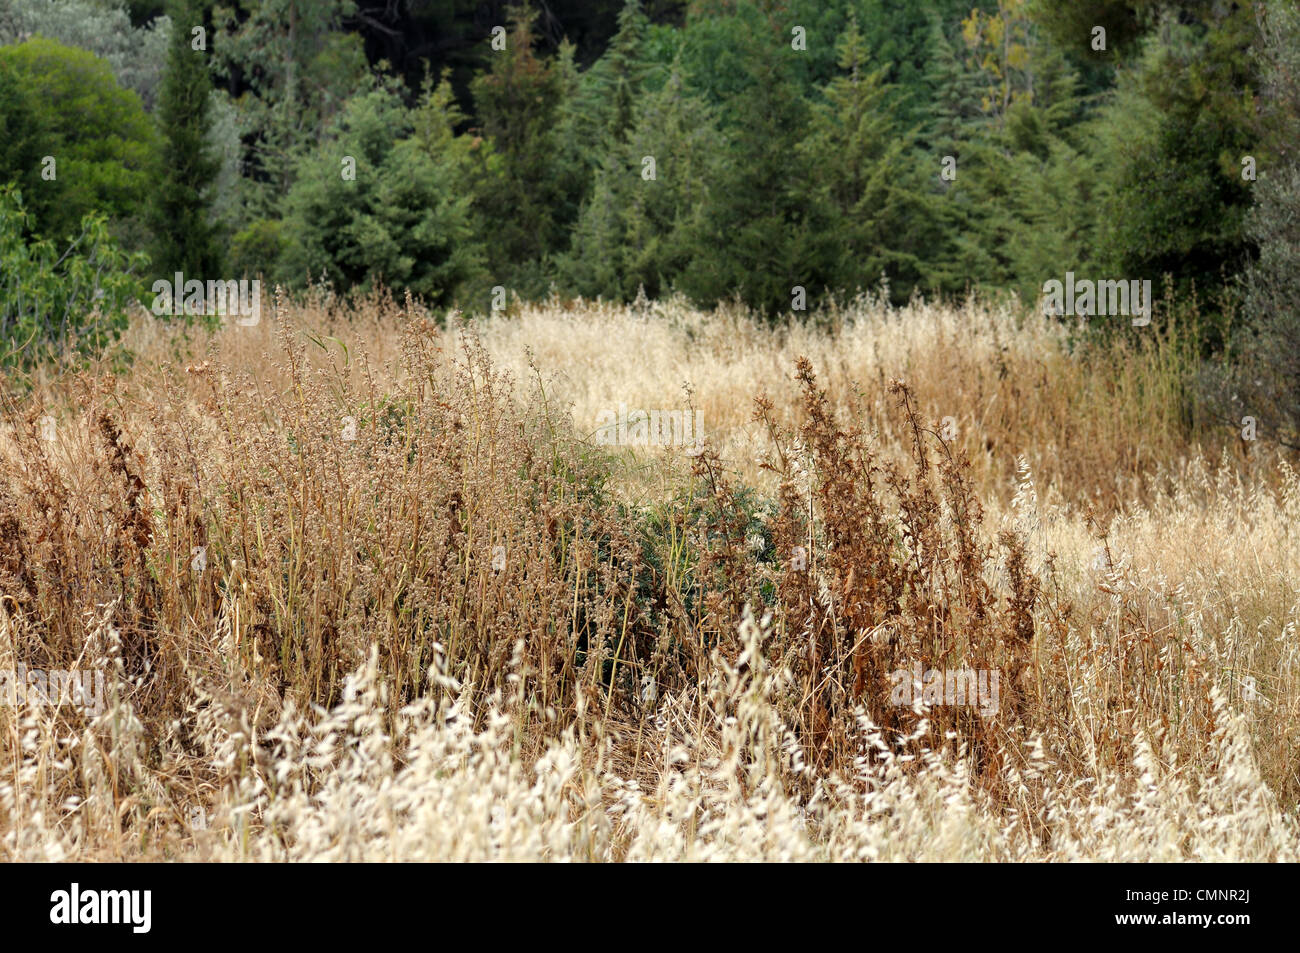 Bereich der trockenen Pflanzen im Sommer in einem Wald. Selektiven Fokus. Stockfoto